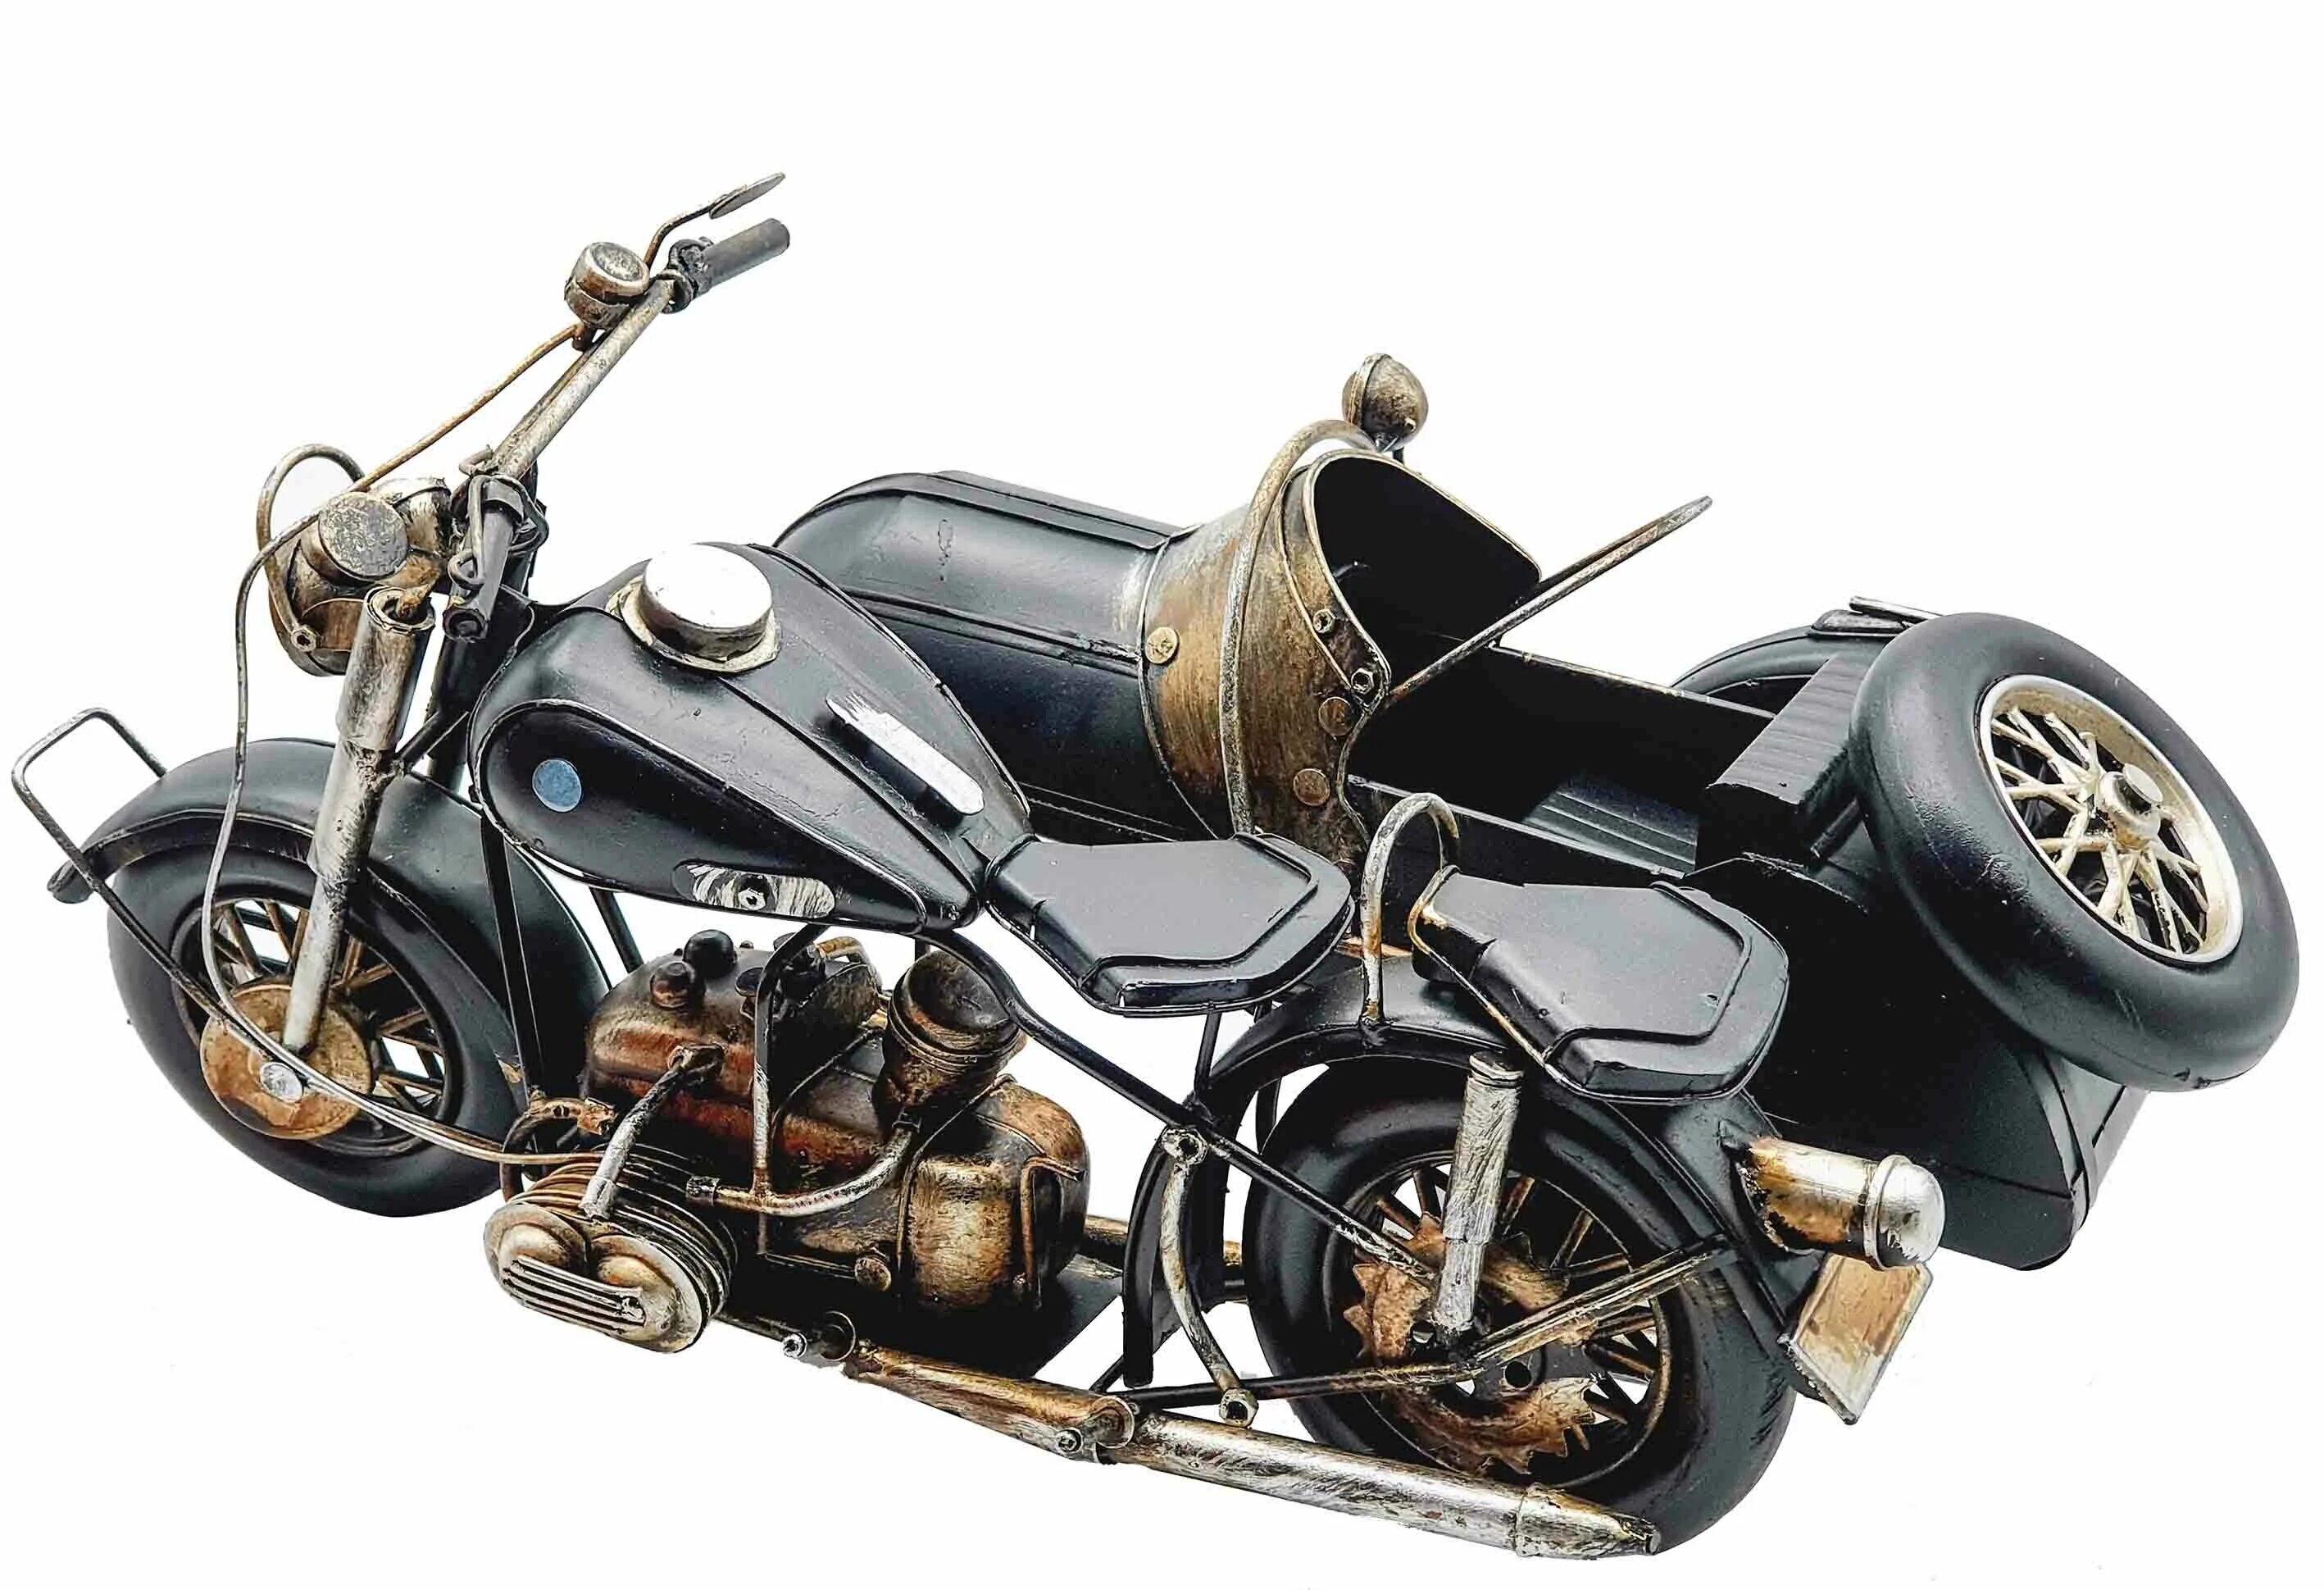 Модель мотоцикла. Сувенирный мотоцикл. Сувенир мотоцикл из металла. Моделька мотоцикла БМВ. Сборные модели мотоциклов